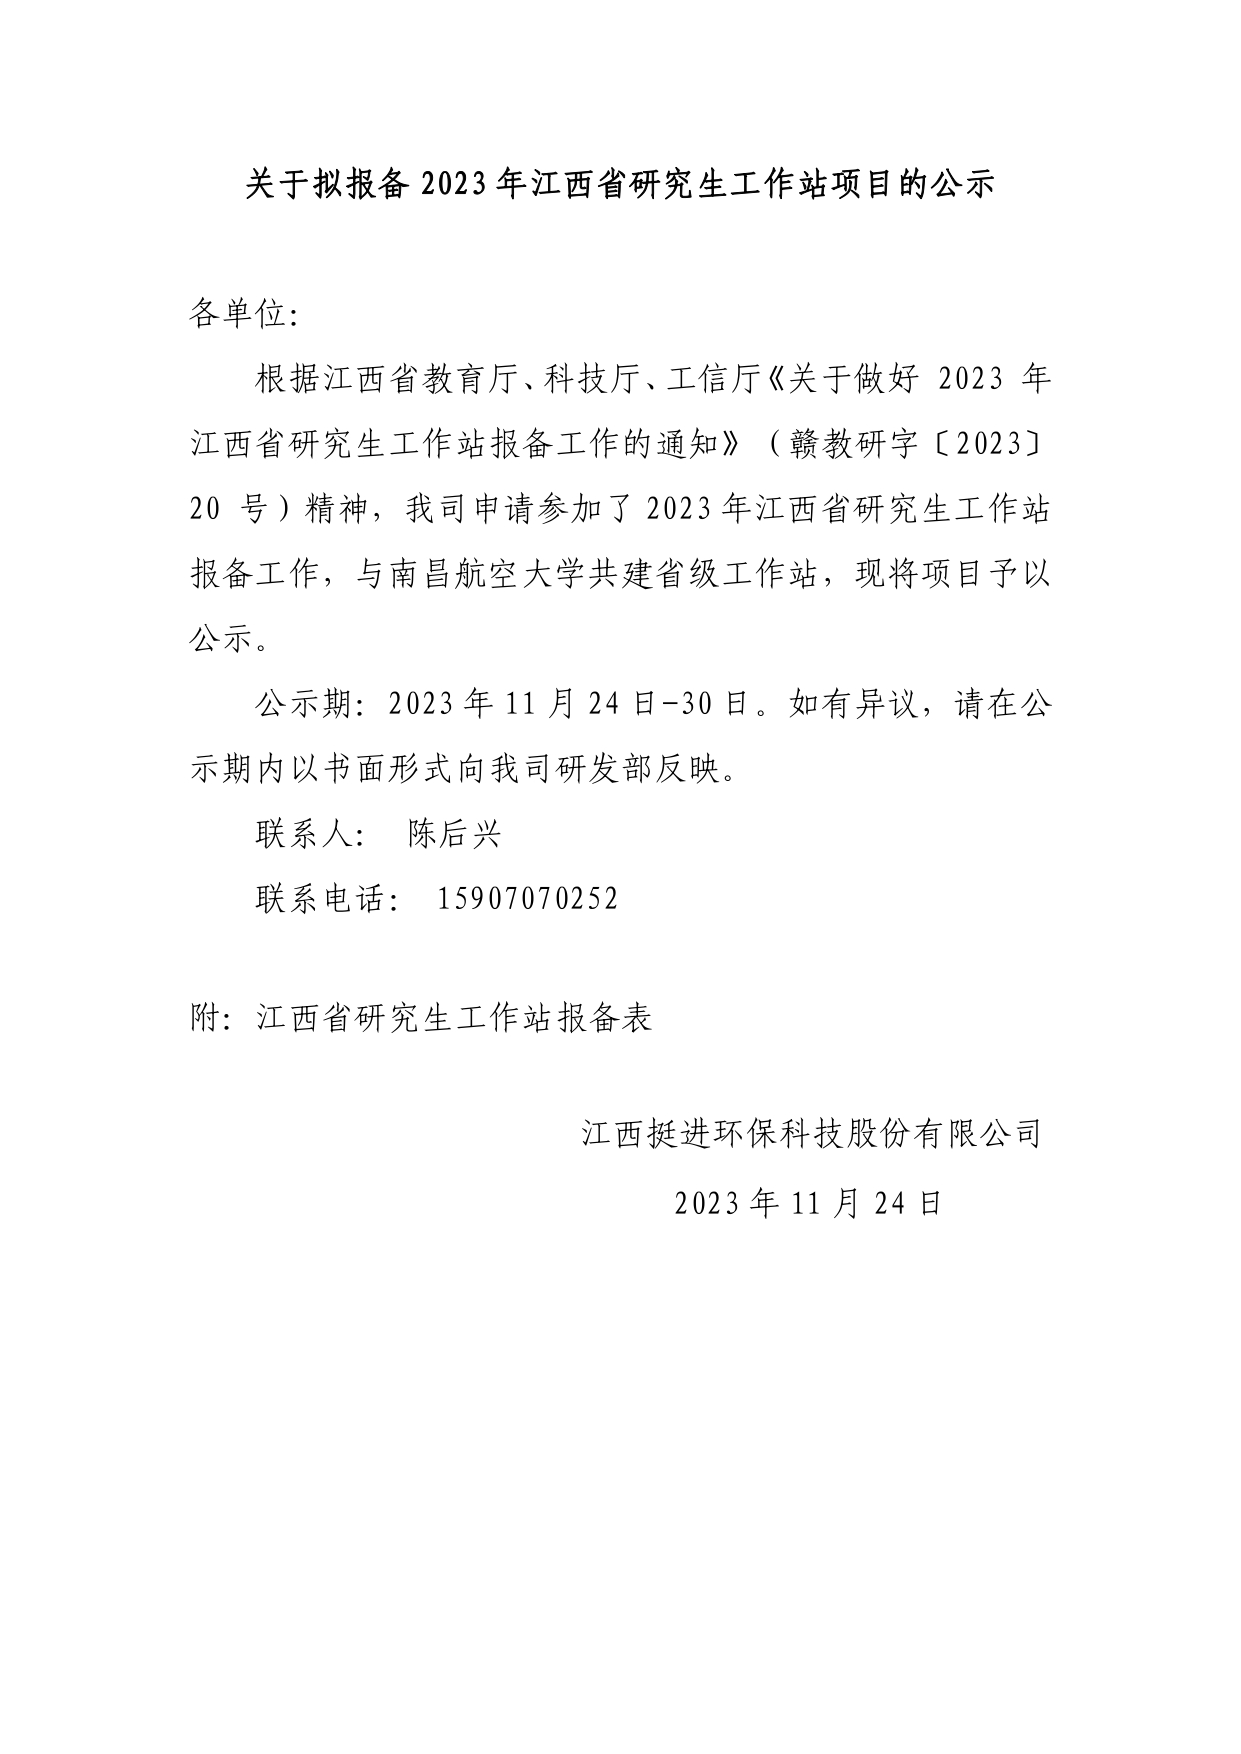 關于擬報備2023年江西省研究生工作站項目的公示